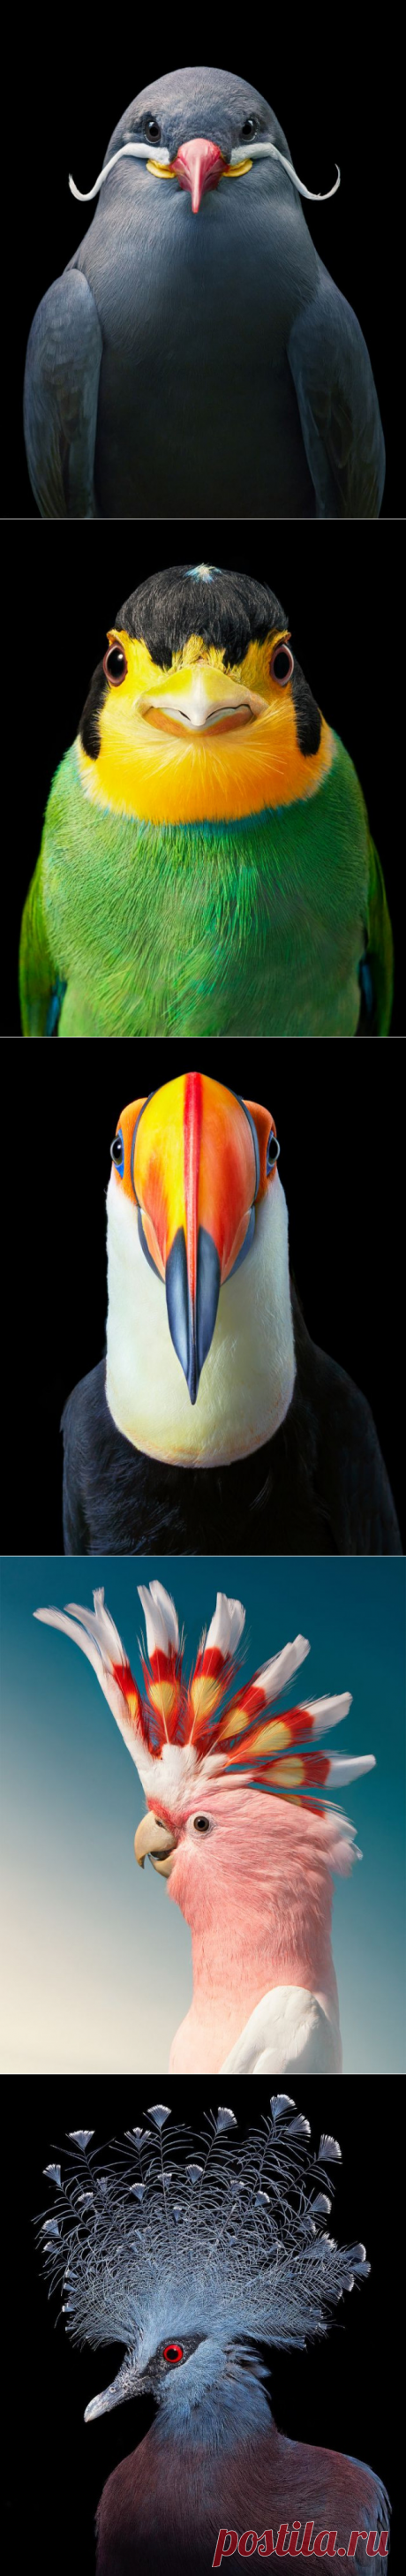 Красочные портреты птиц, которые делает фотограф Тим Флэк